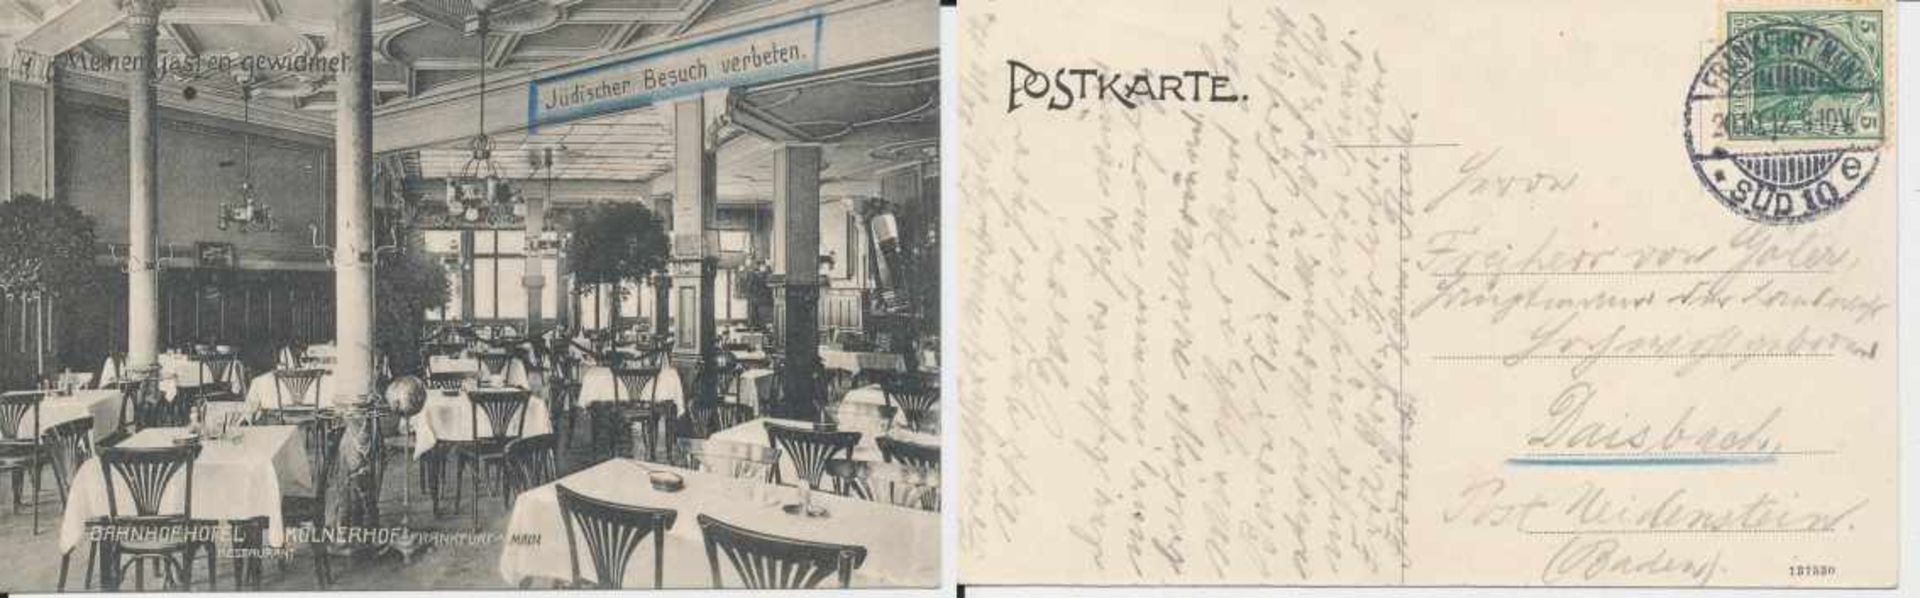 1 Postkarte, s/w Foto, kleines Format, Bahnhofhotel und Restaurant "Kölnerhof" in Frankfurt a. Main,